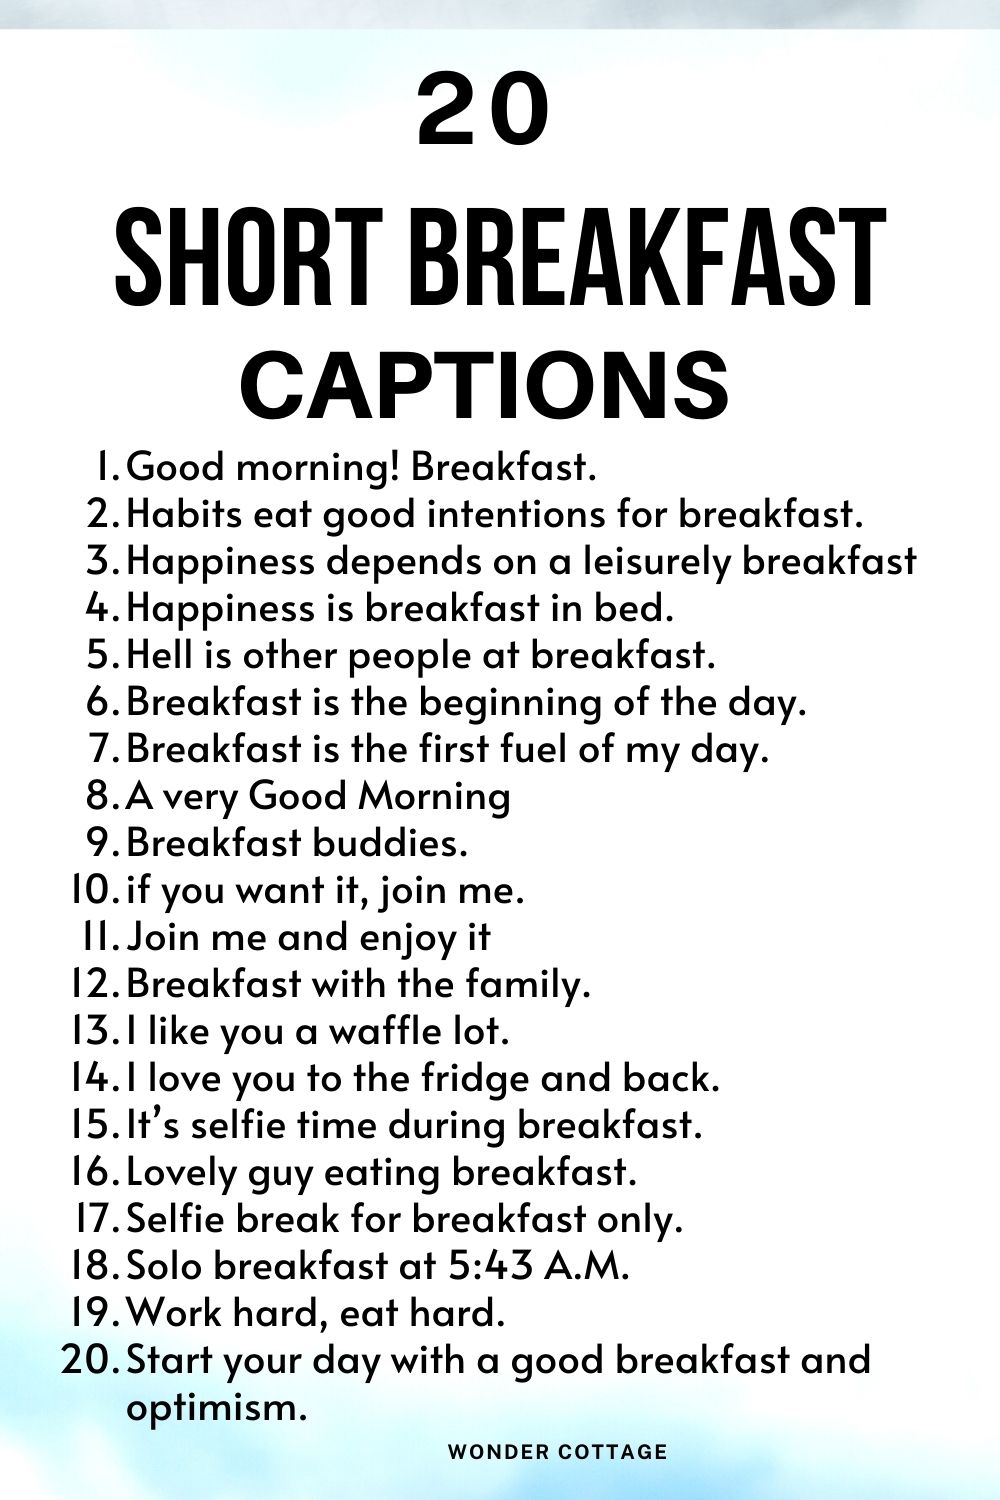 Short breakfast captions